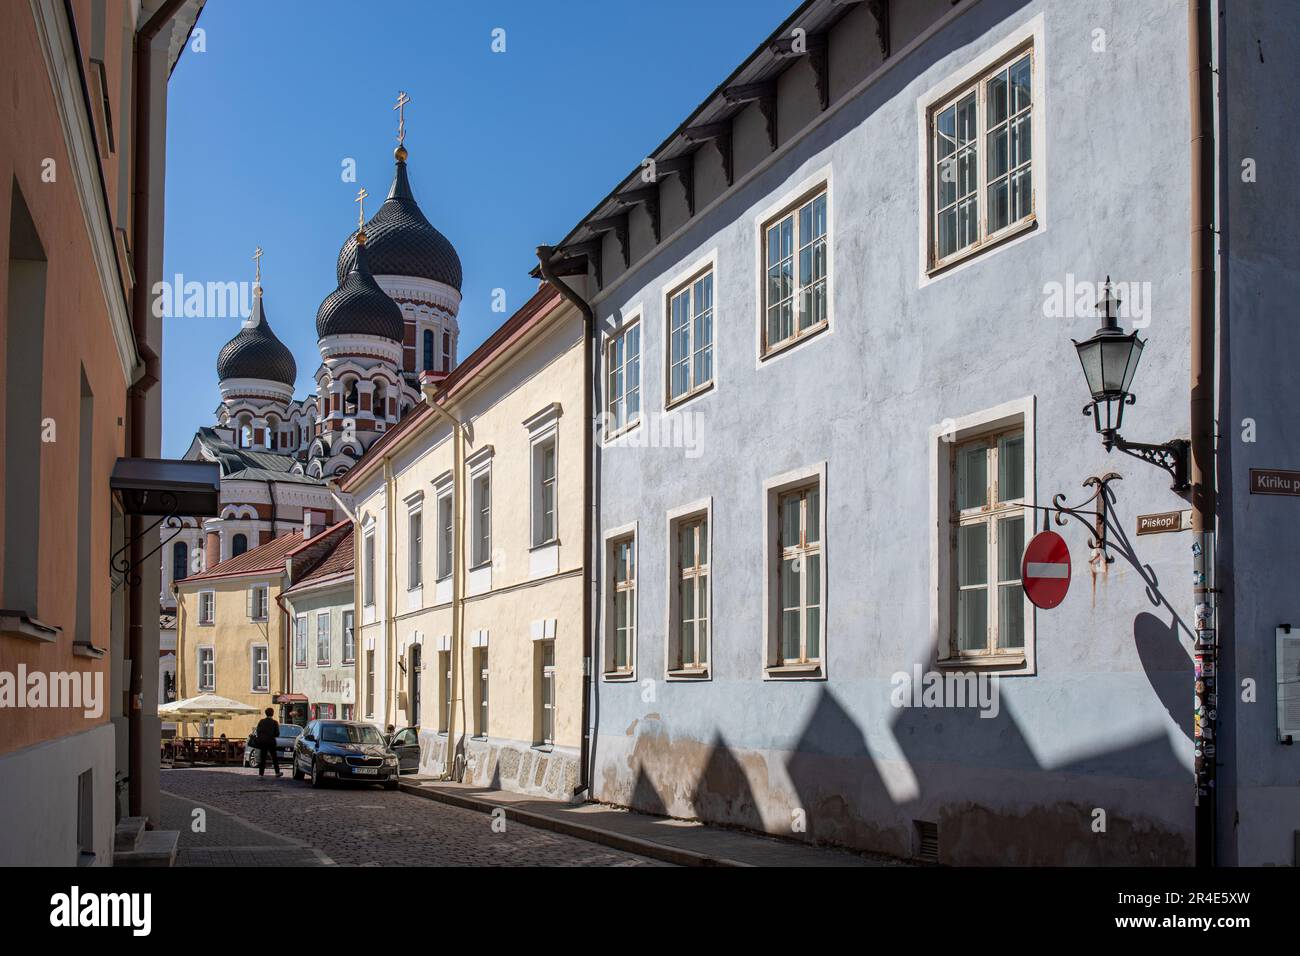 Étroite rue Piiskopi avec des dômes d'oignon de la cathédrale Alexandre Nevsky en arrière-plan dans la colline de Toompea, Vanalinn ou la vieille ville de Tallinn, Estonie Banque D'Images